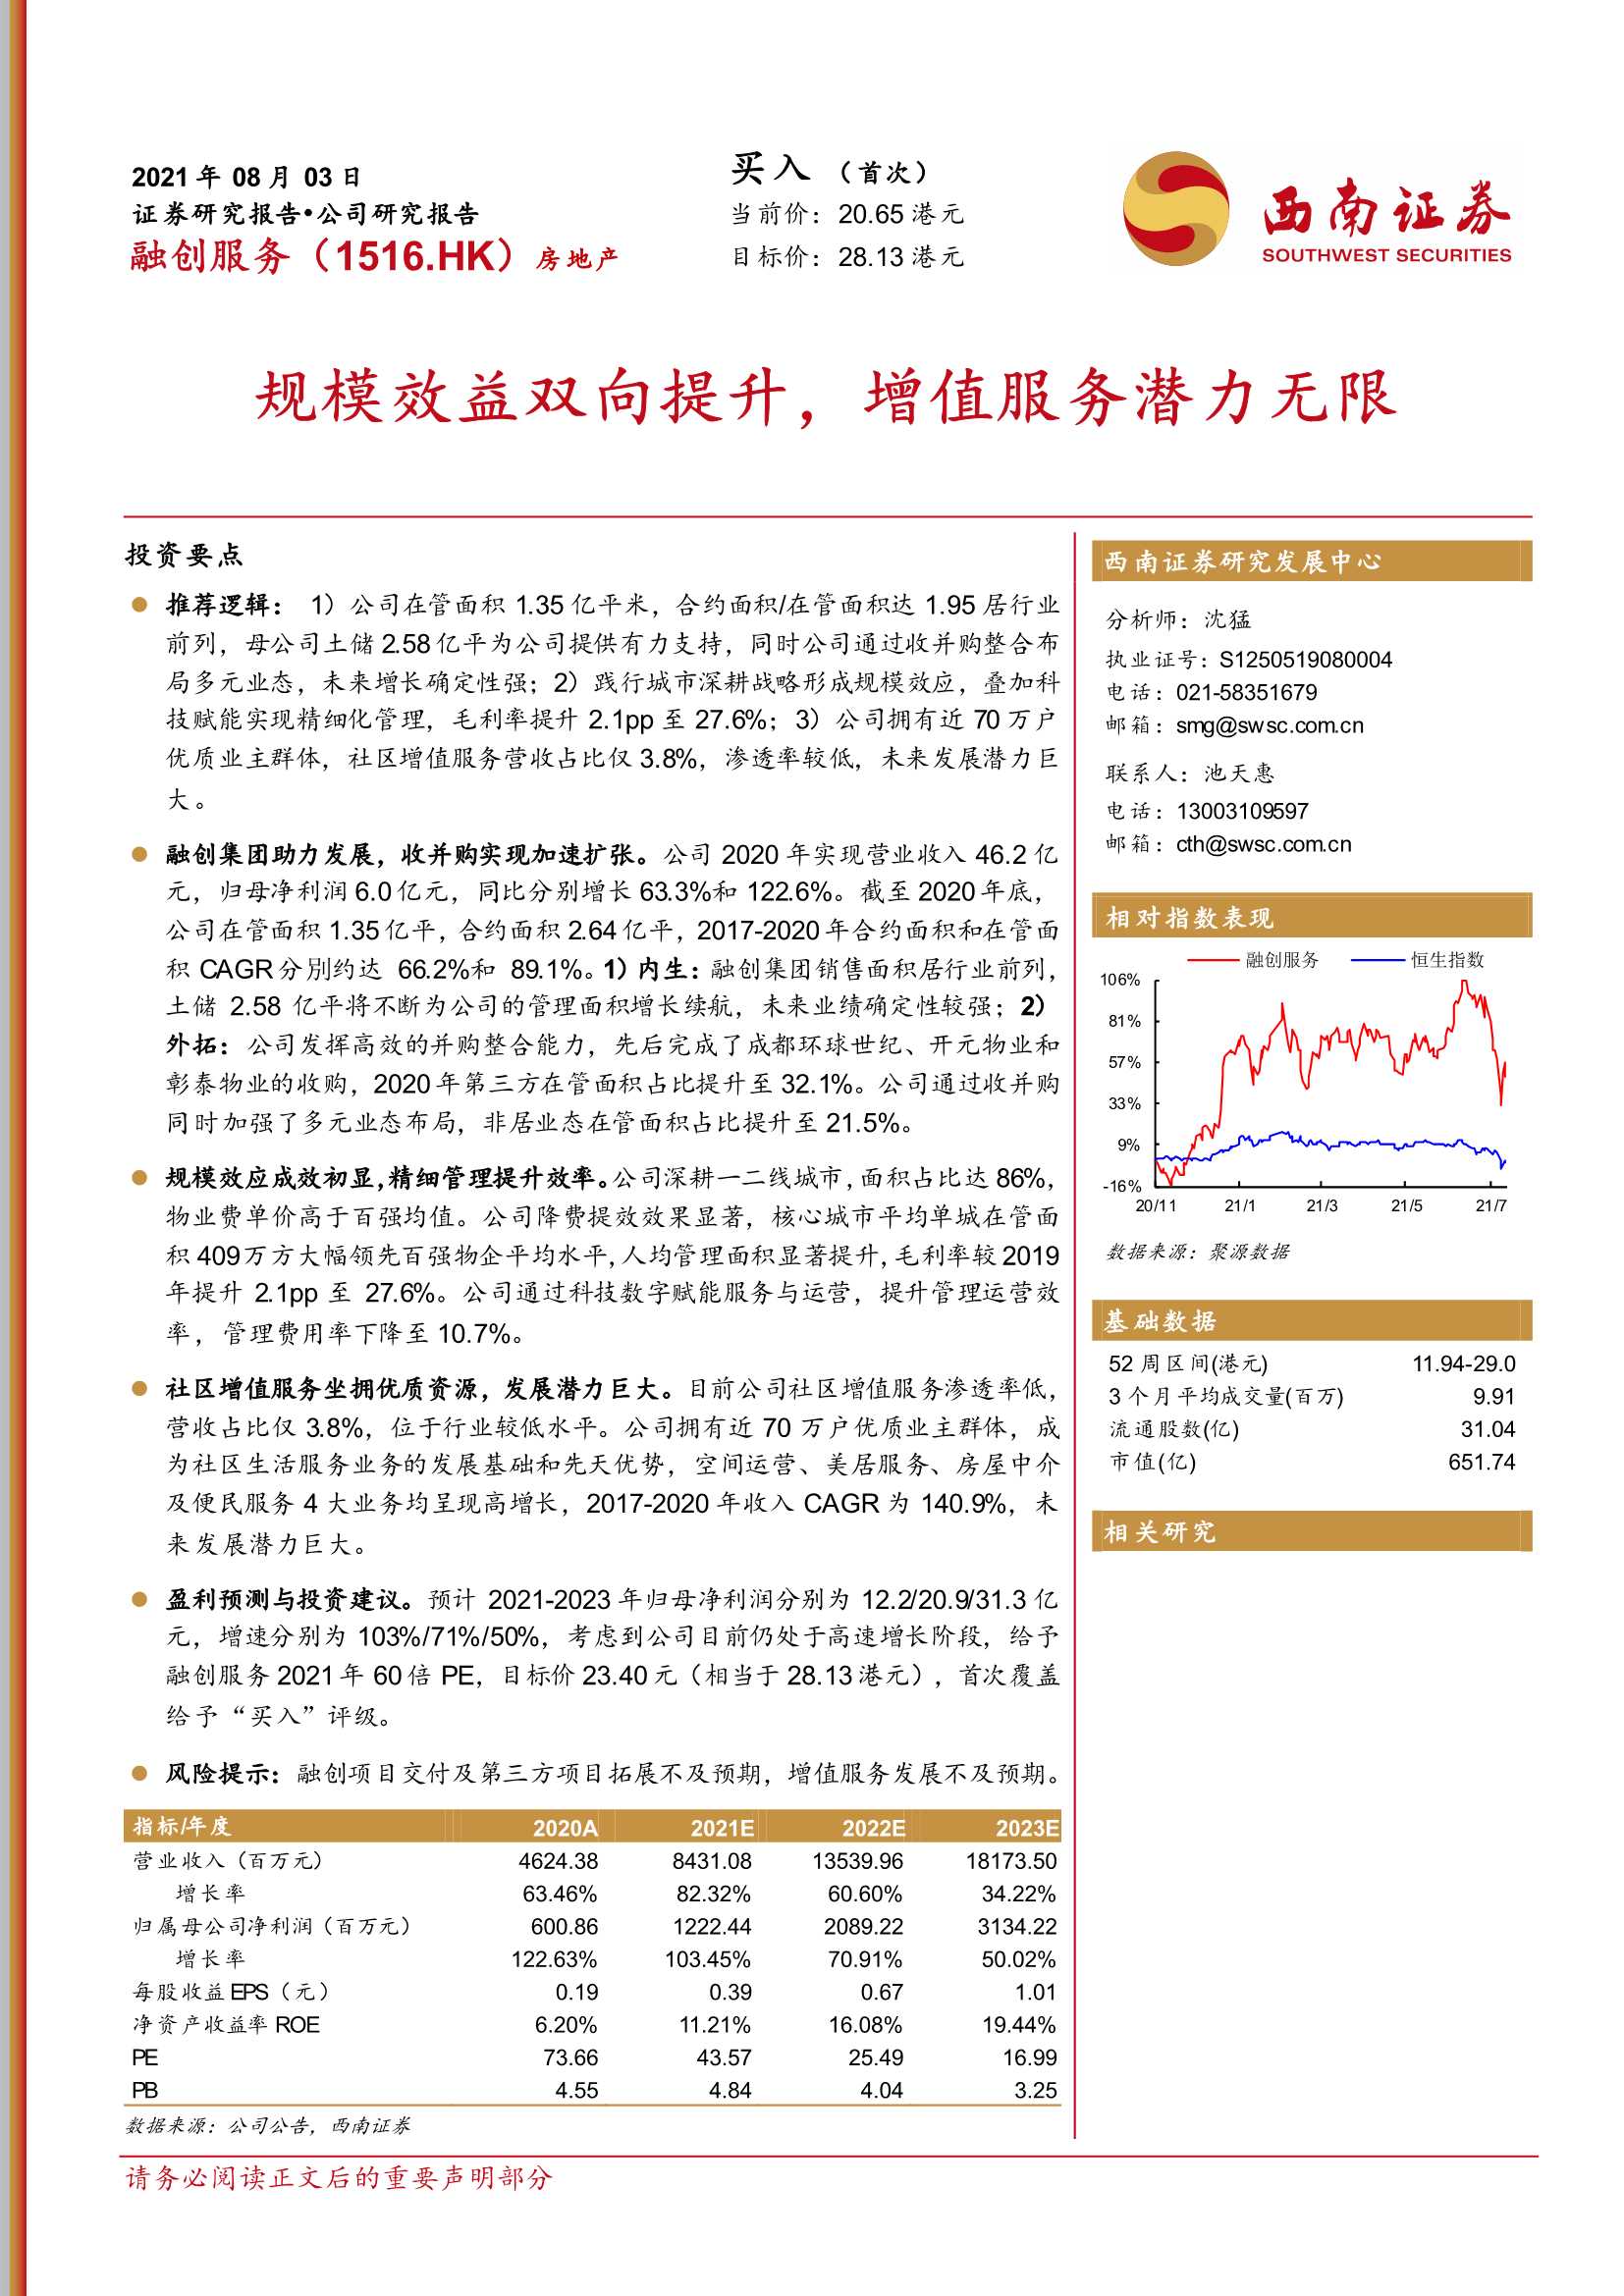 西南证券-融创服务-1516.HK-规模效益双向提升，增值服务潜力无限-20210803-24页